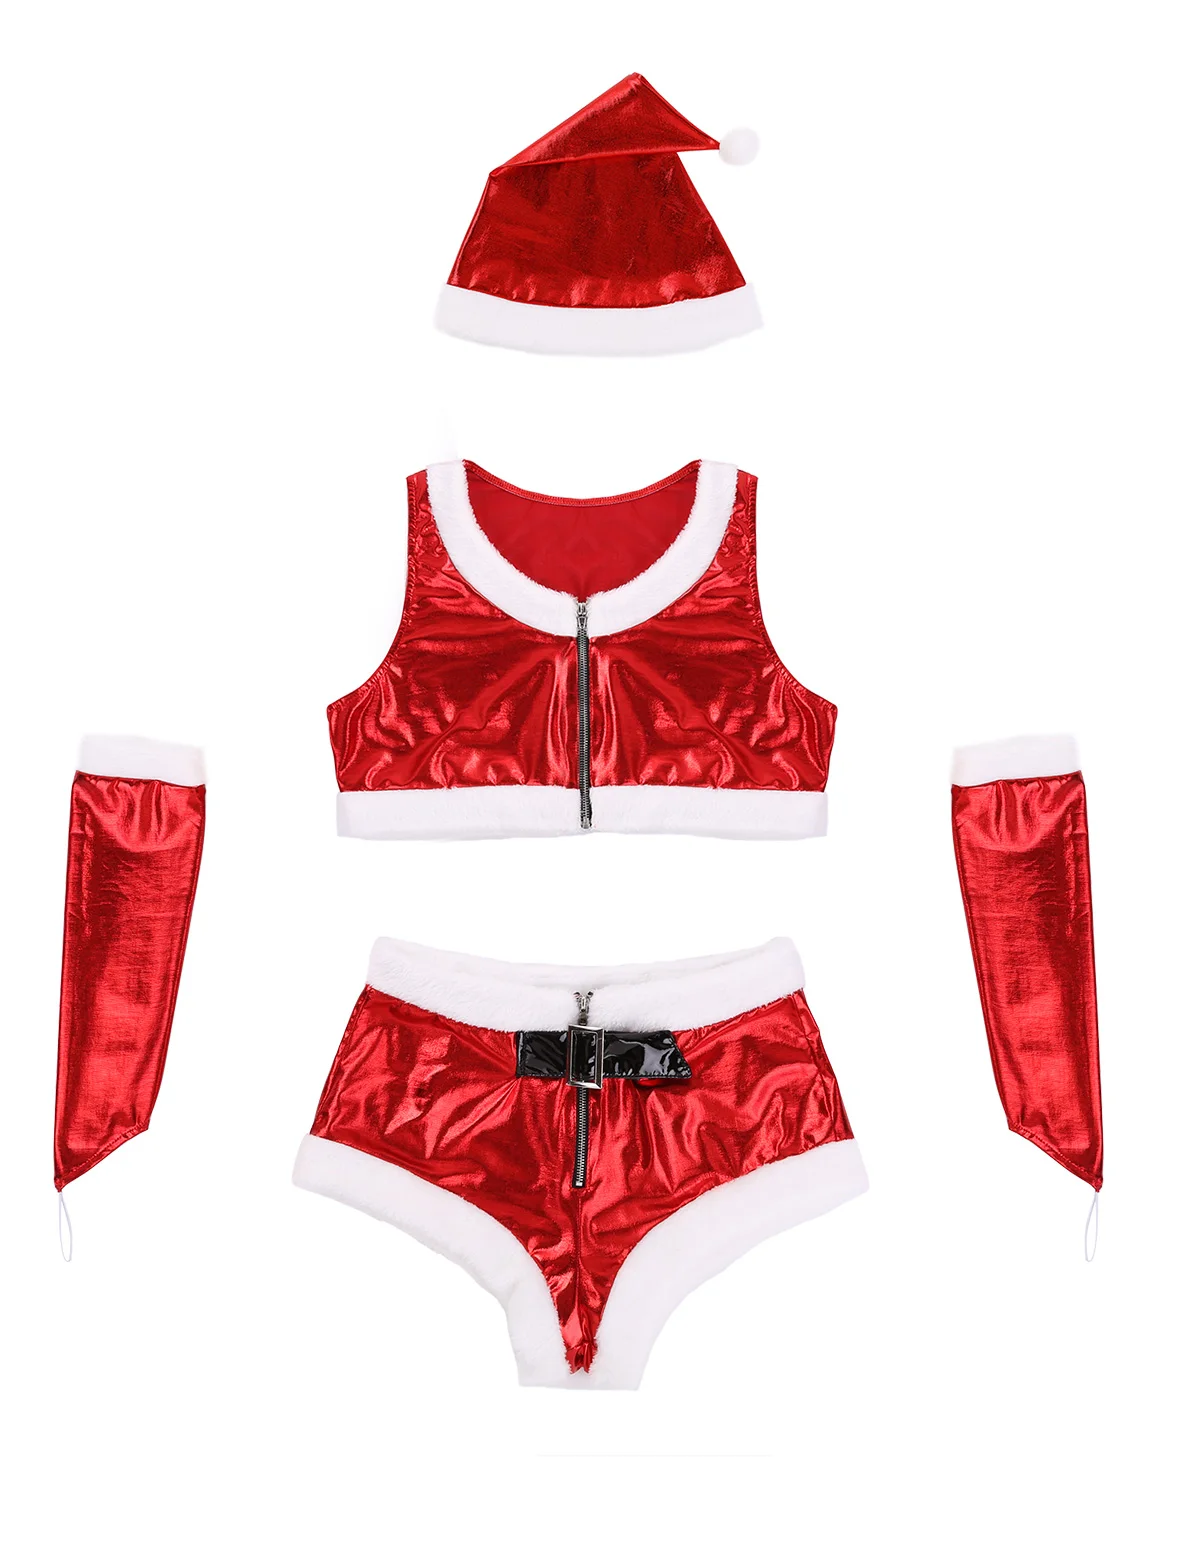 Рождественский костюм для ролевых игр, костюм для взрослых женщин, нарядное платье, женский новогодний костюм, костюм Санта Клауса, детская одежда для костюмированной вечеринки, Рождественская одежда